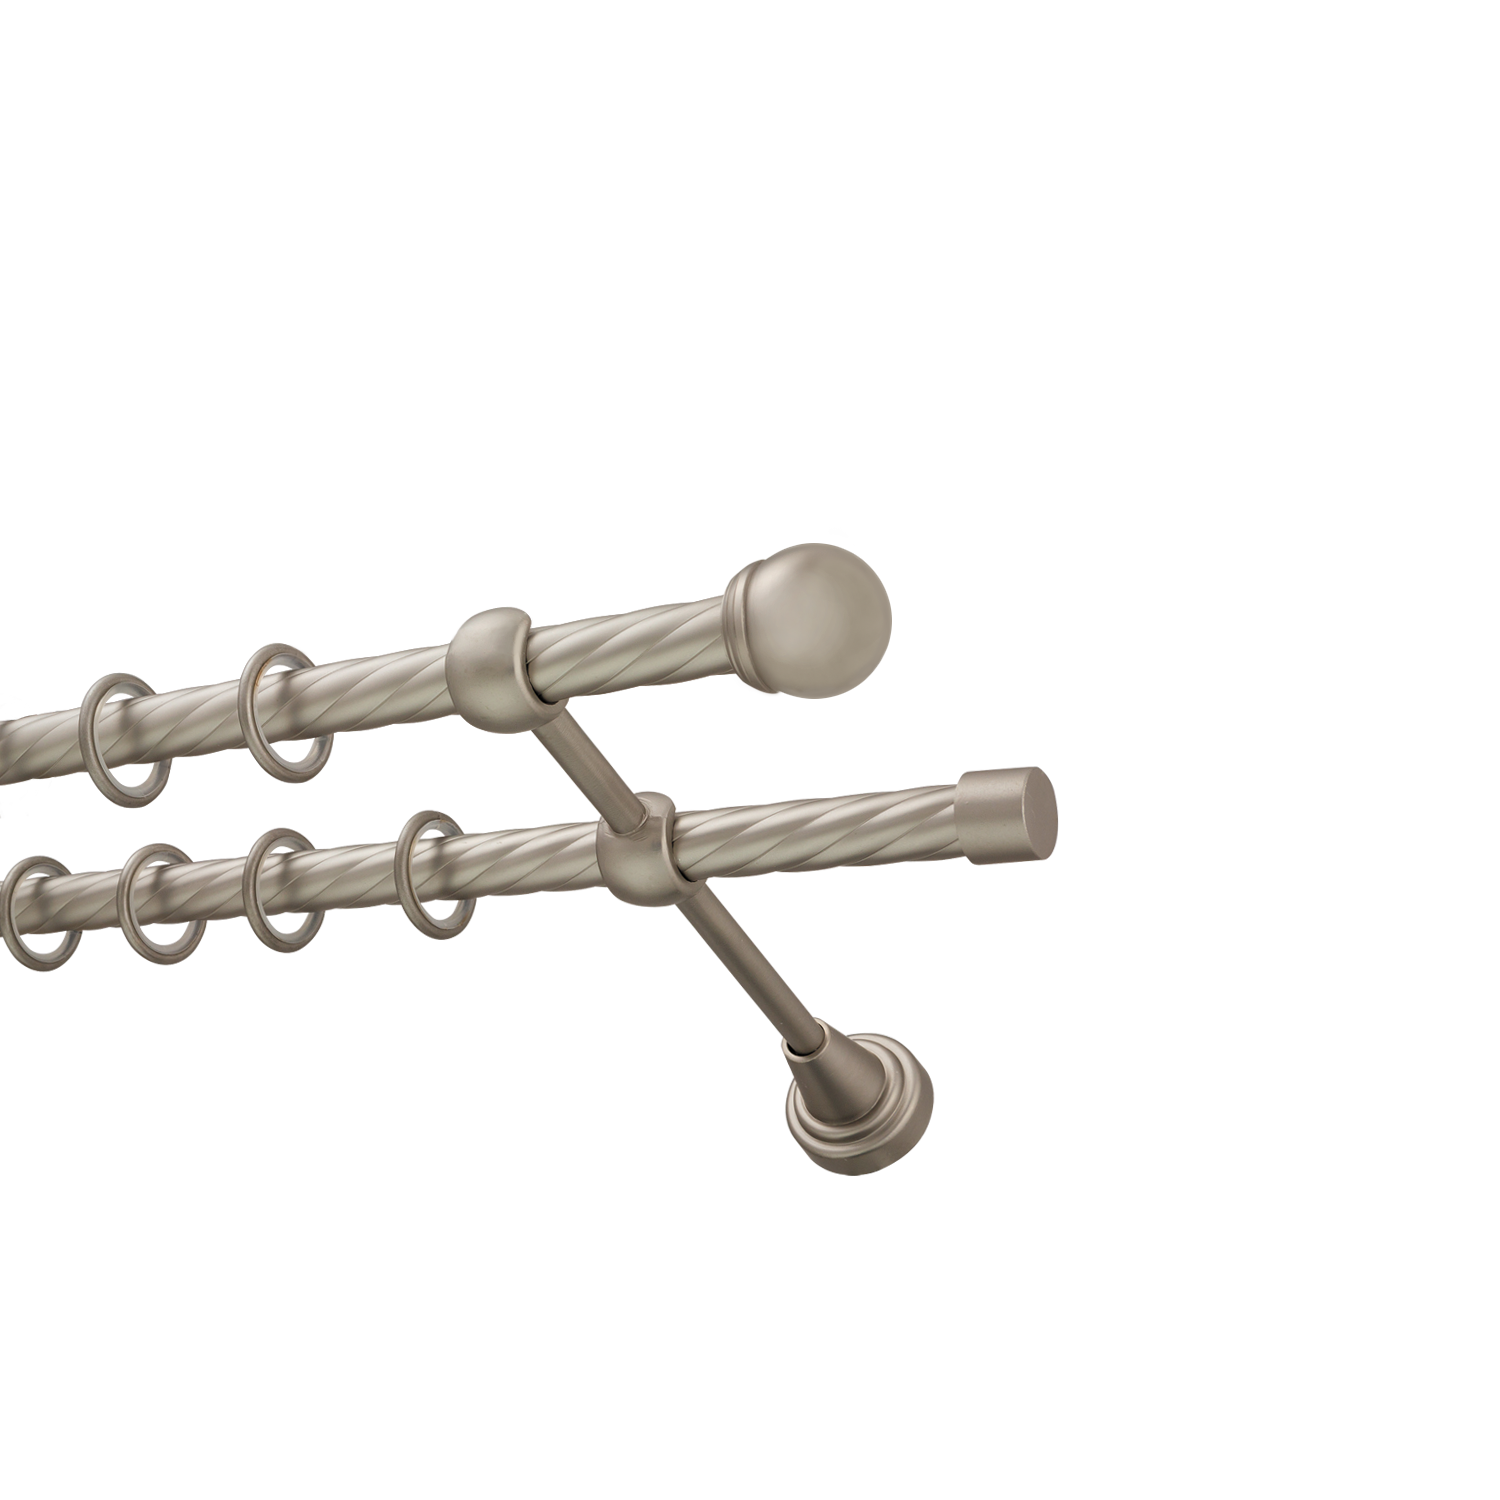 Металлический карниз для штор Вива, двухрядный 16/16 мм, сталь, витая штанга, длина 200 см - фото Wikidecor.ru